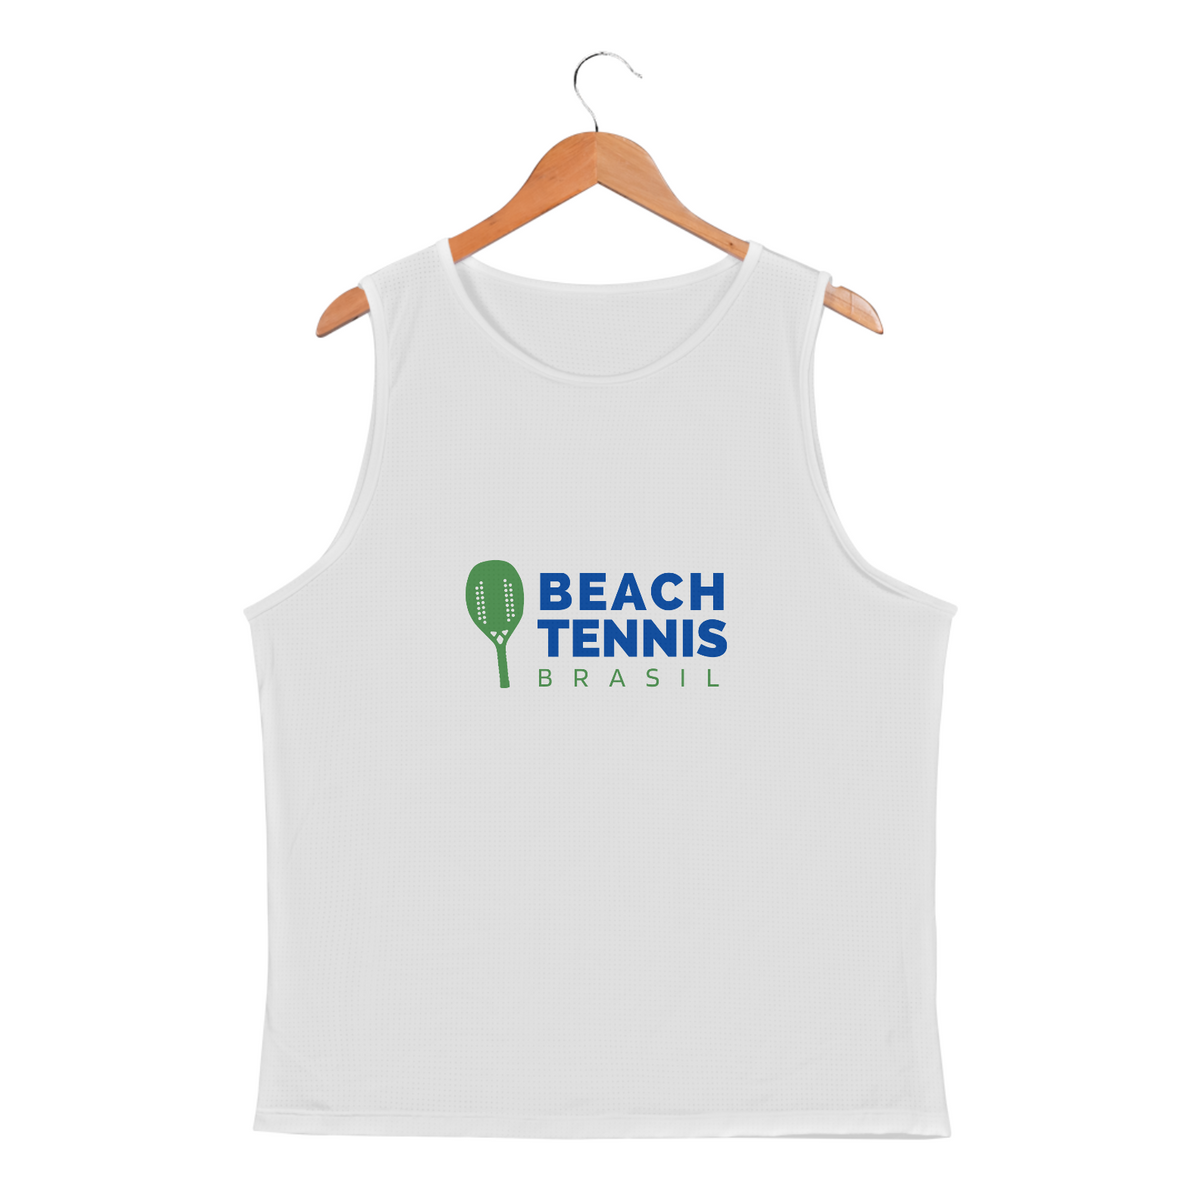 Nome do produto: Regata beach tennis brasil